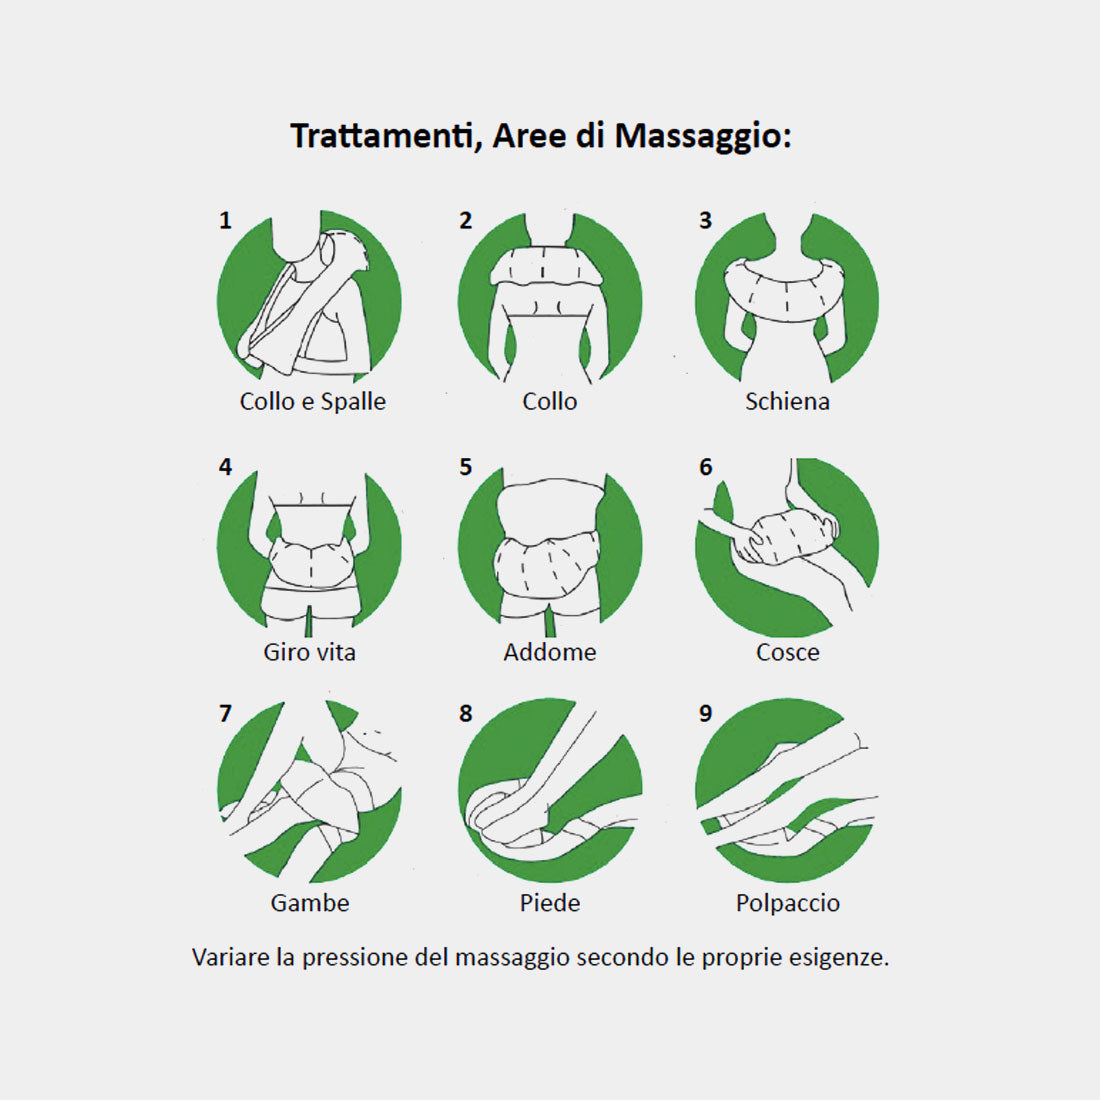 TESMED CERVICAL TECHNOLOGY 4.0 MASSAGER: Entspannendes Massagegerät für Nacken und Schultern, fortschrittliche Technologie.